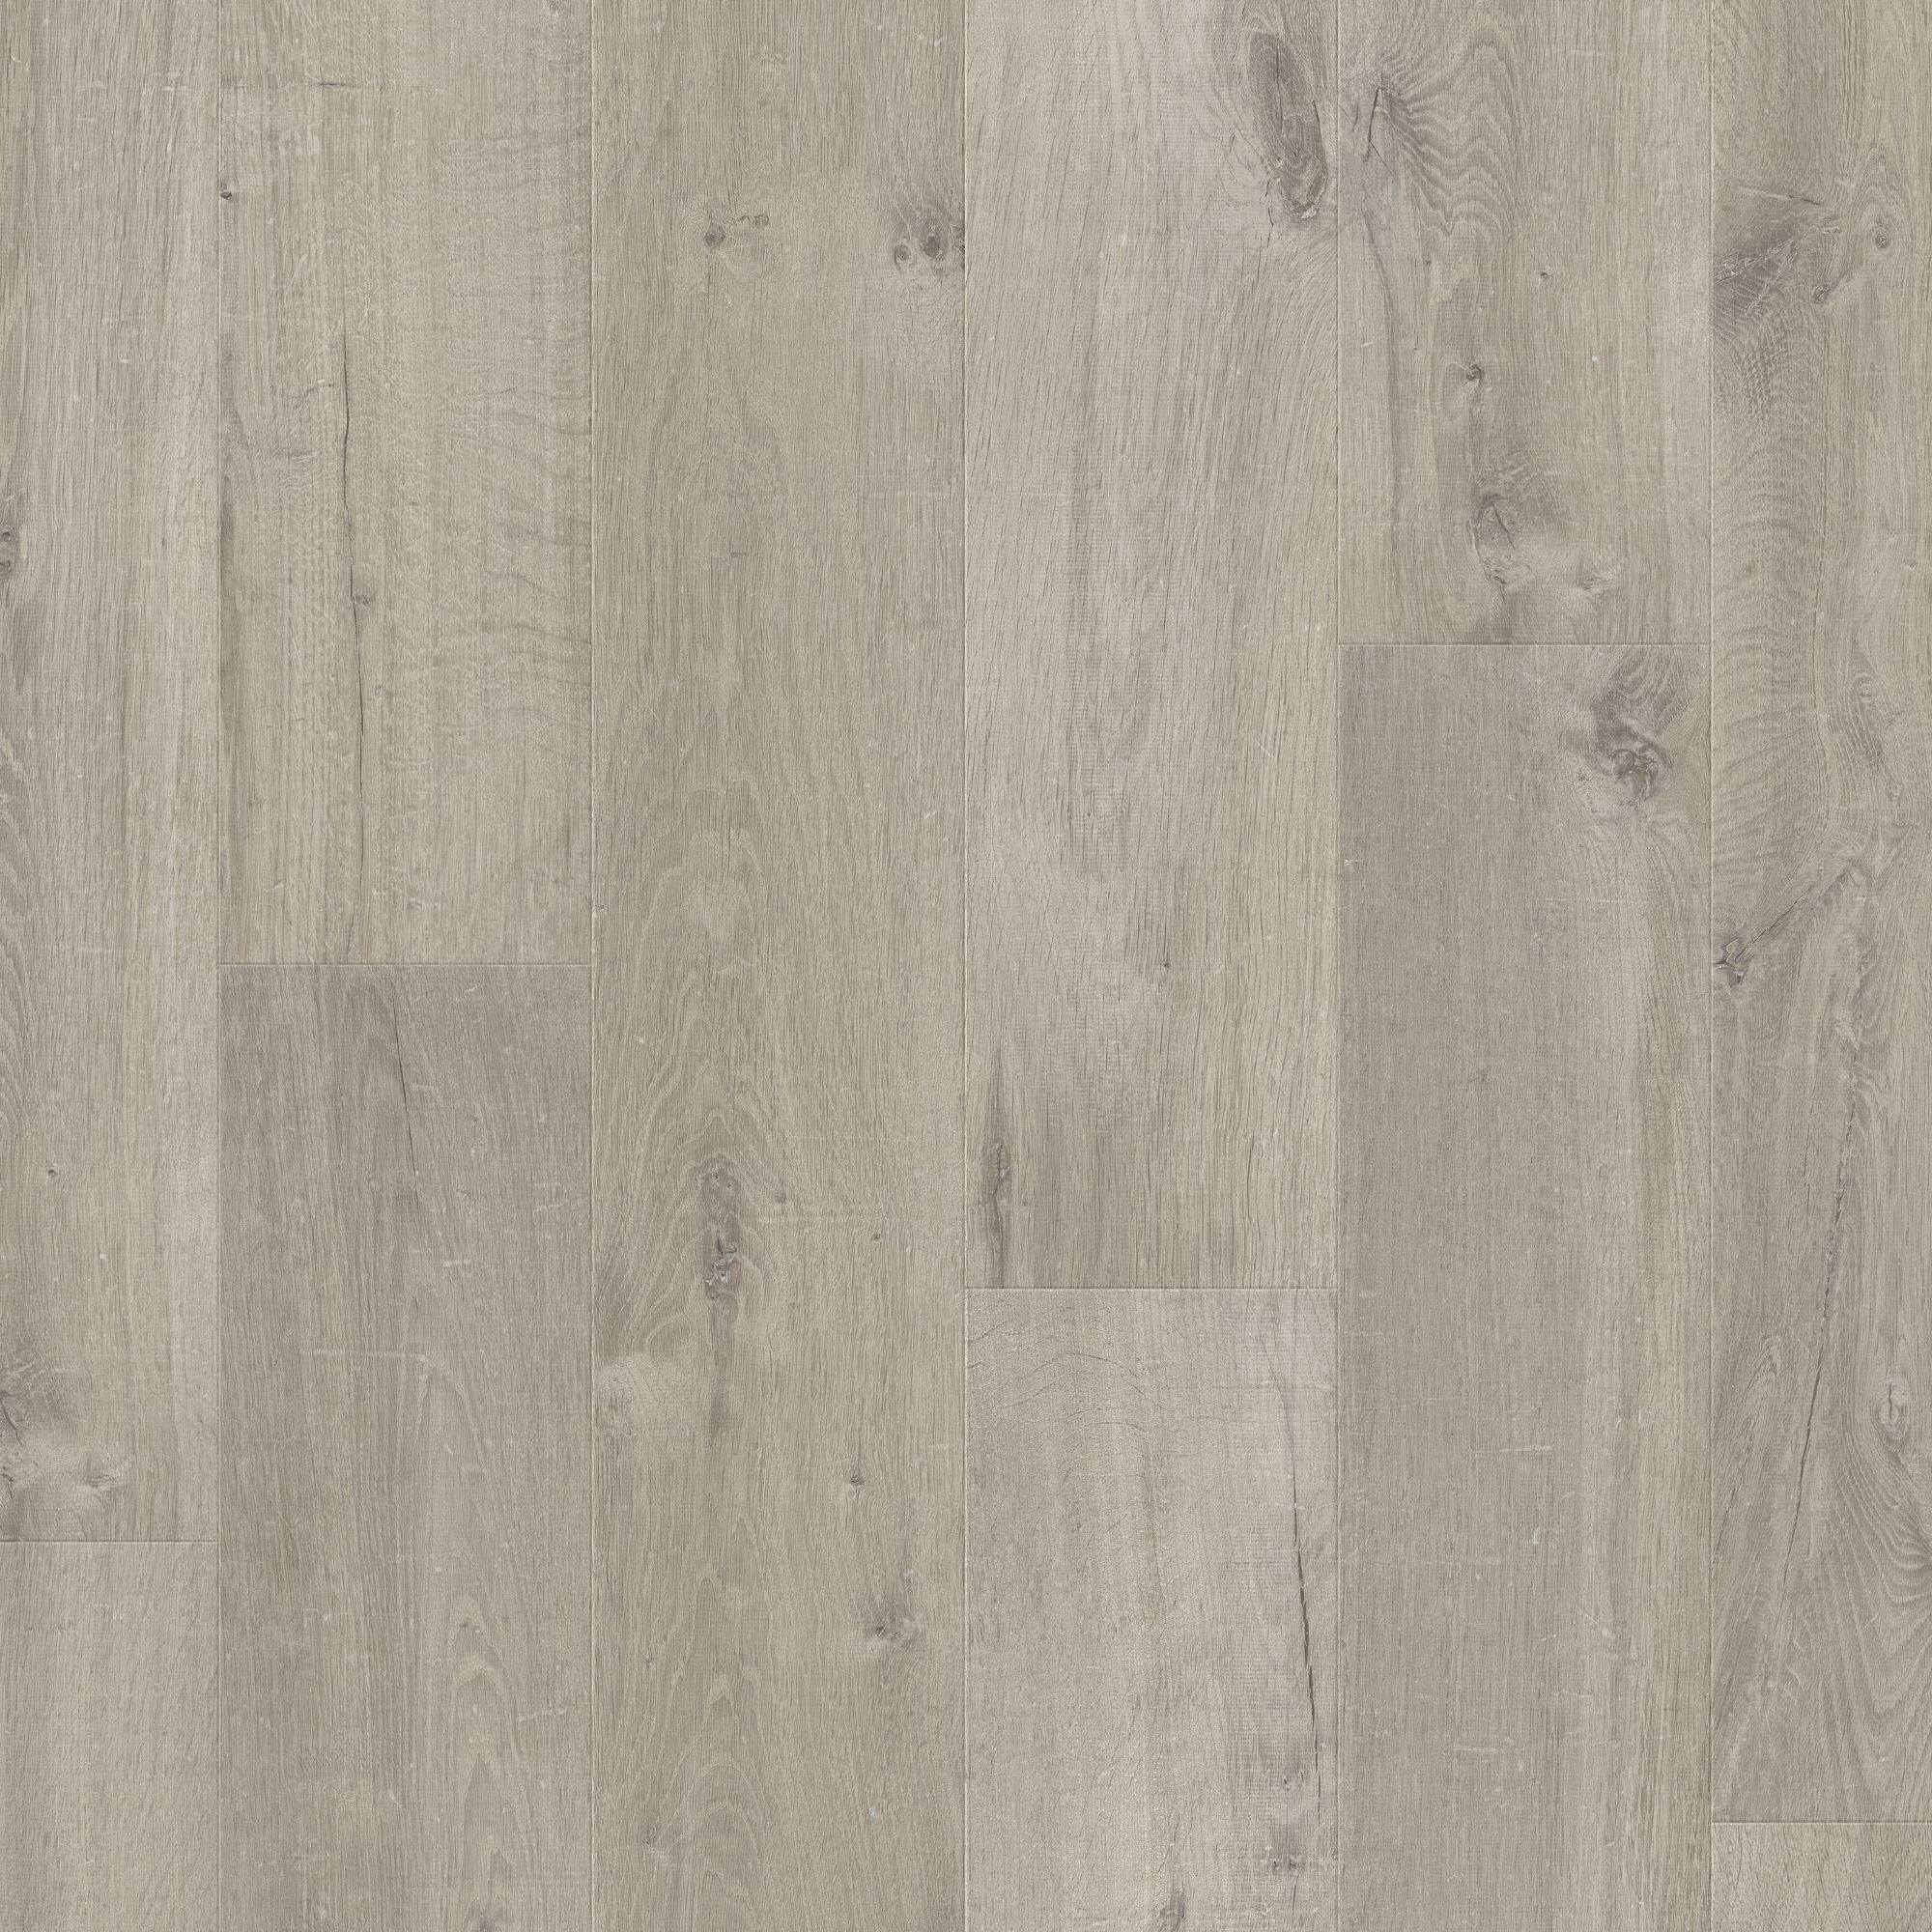 Quick-step Aquanto Dark grey Oak effect Laminate Flooring, 1.835m²